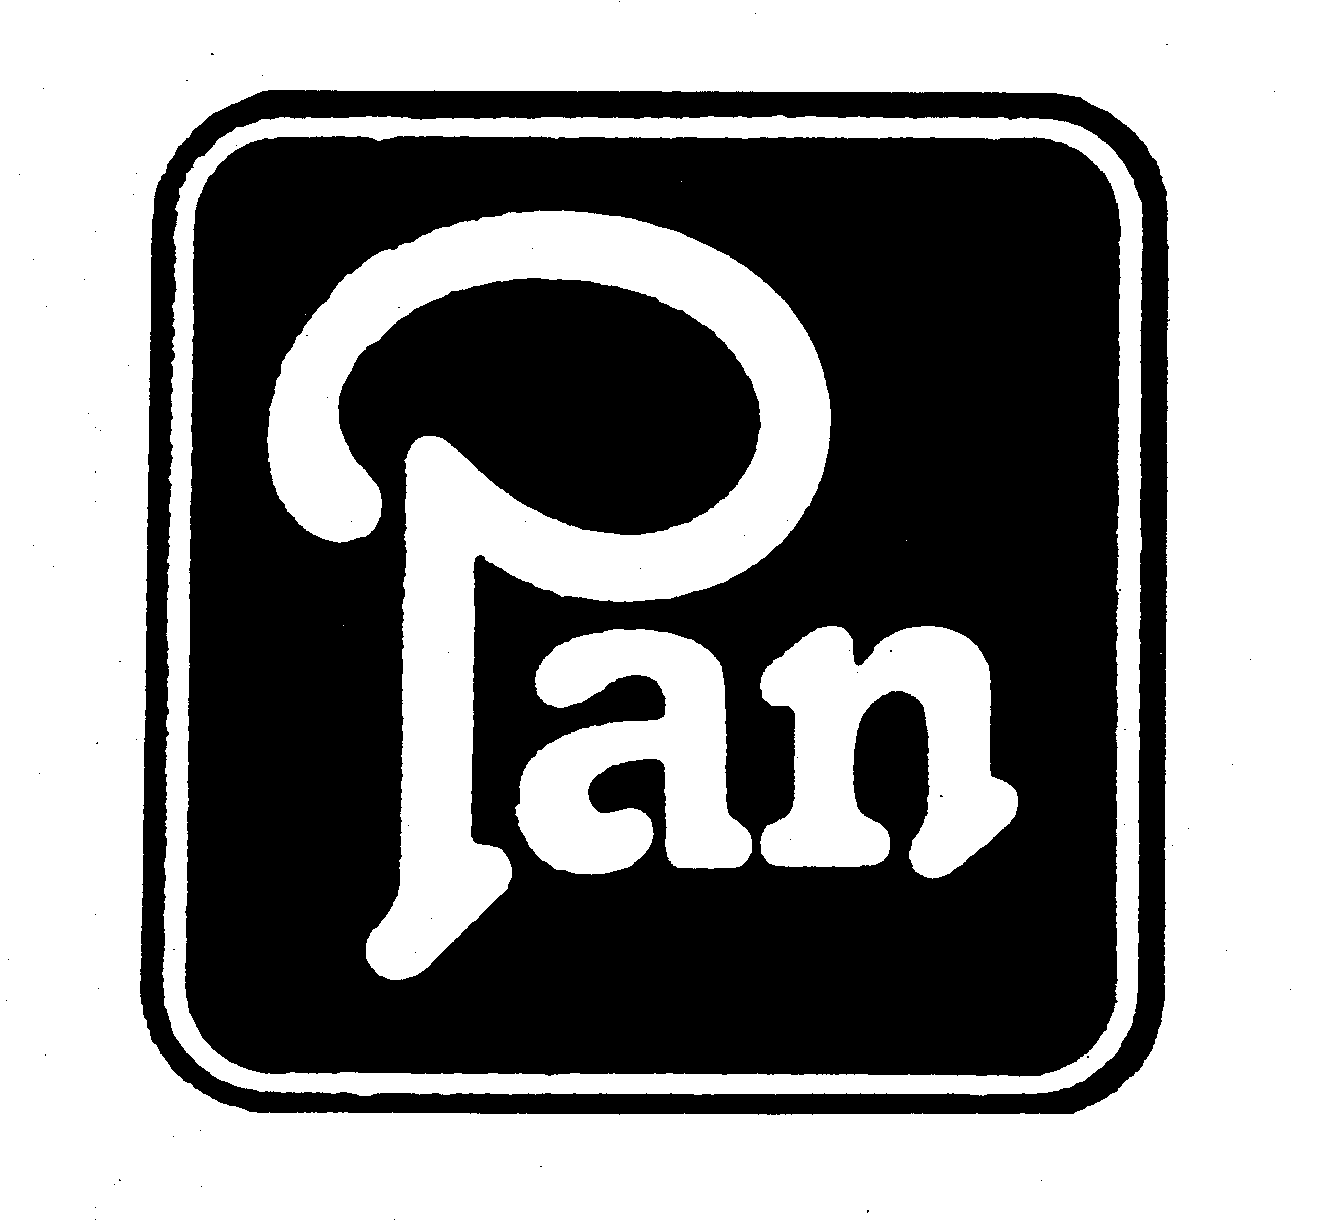 Trademark Logo PAN